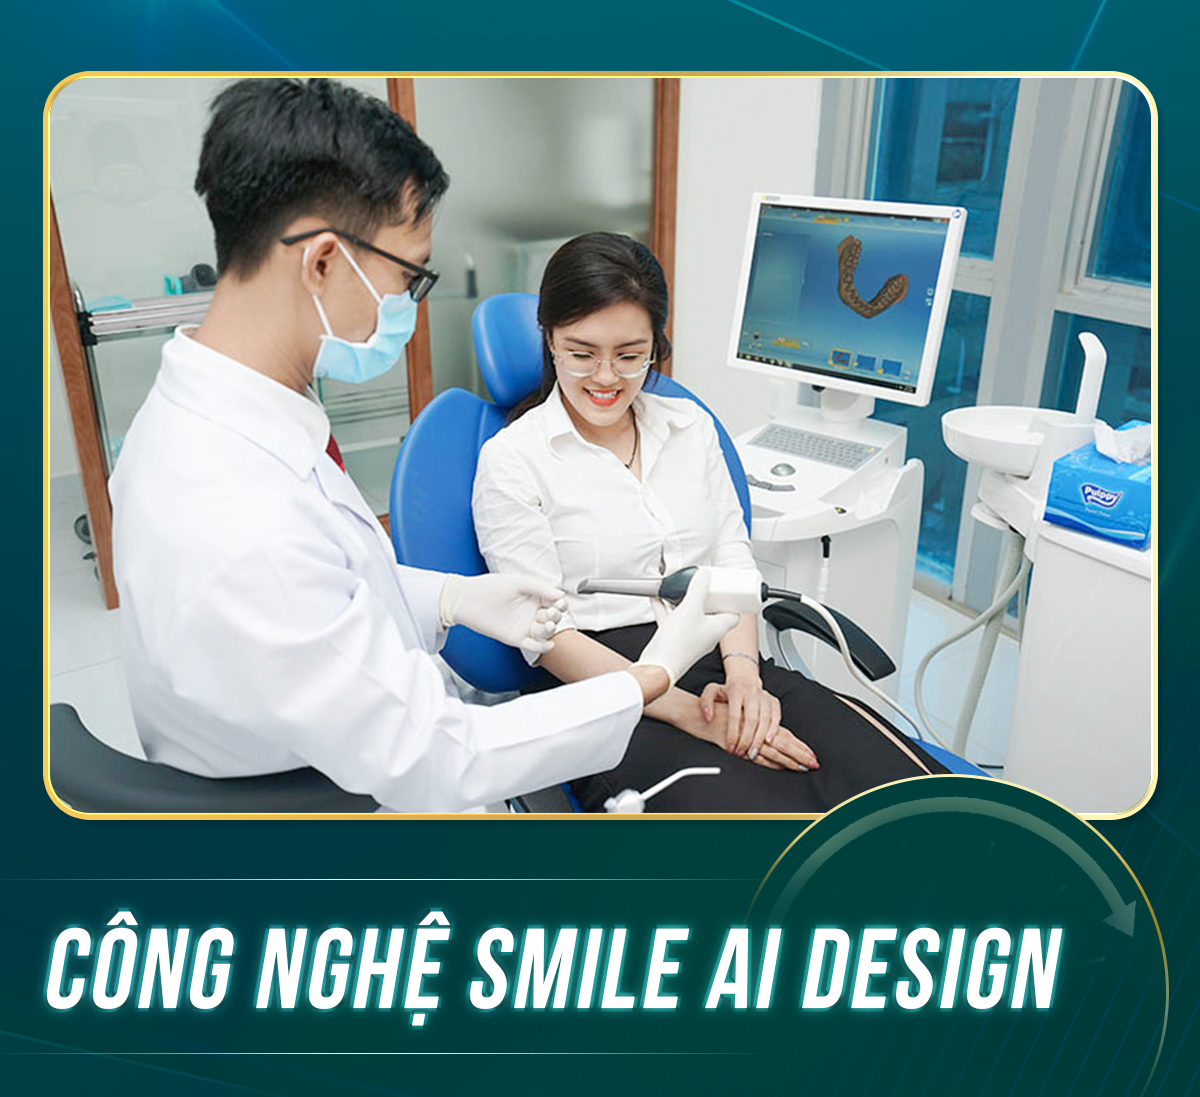 CONG NGHE SMILE AI DESIGN 3